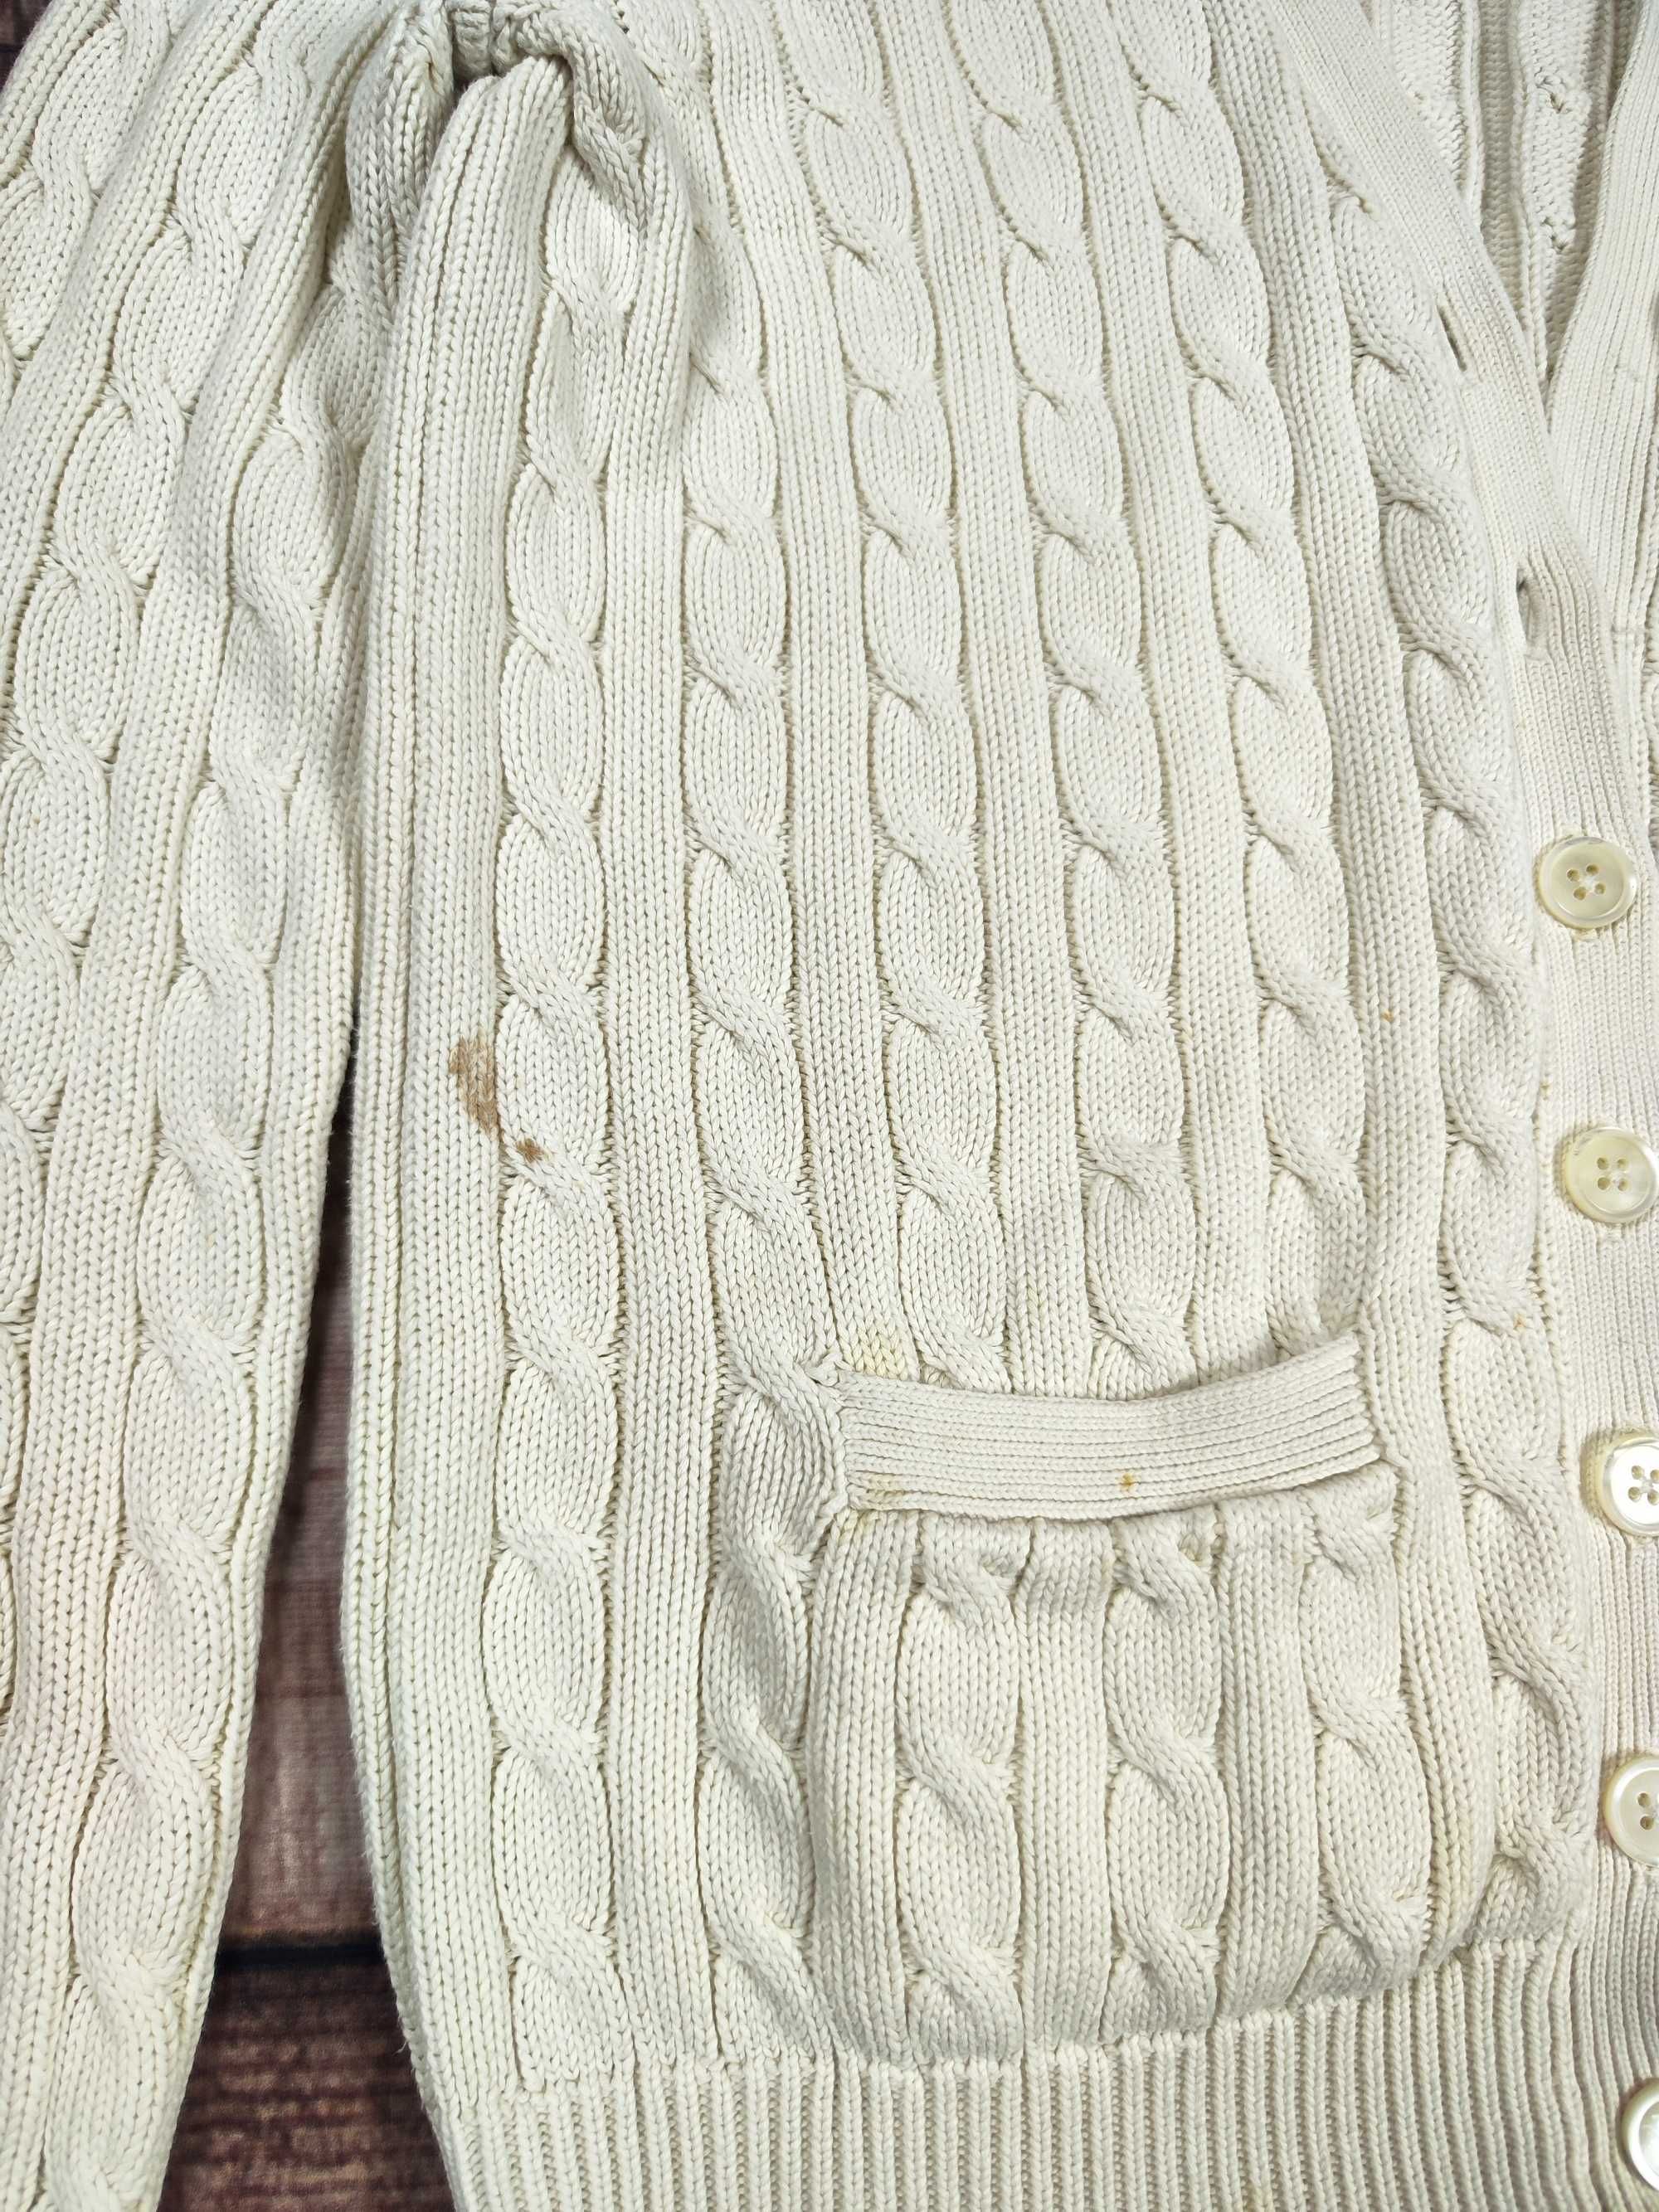 Sweter Ralph Lauren kardigan damski warkocz r. M/L